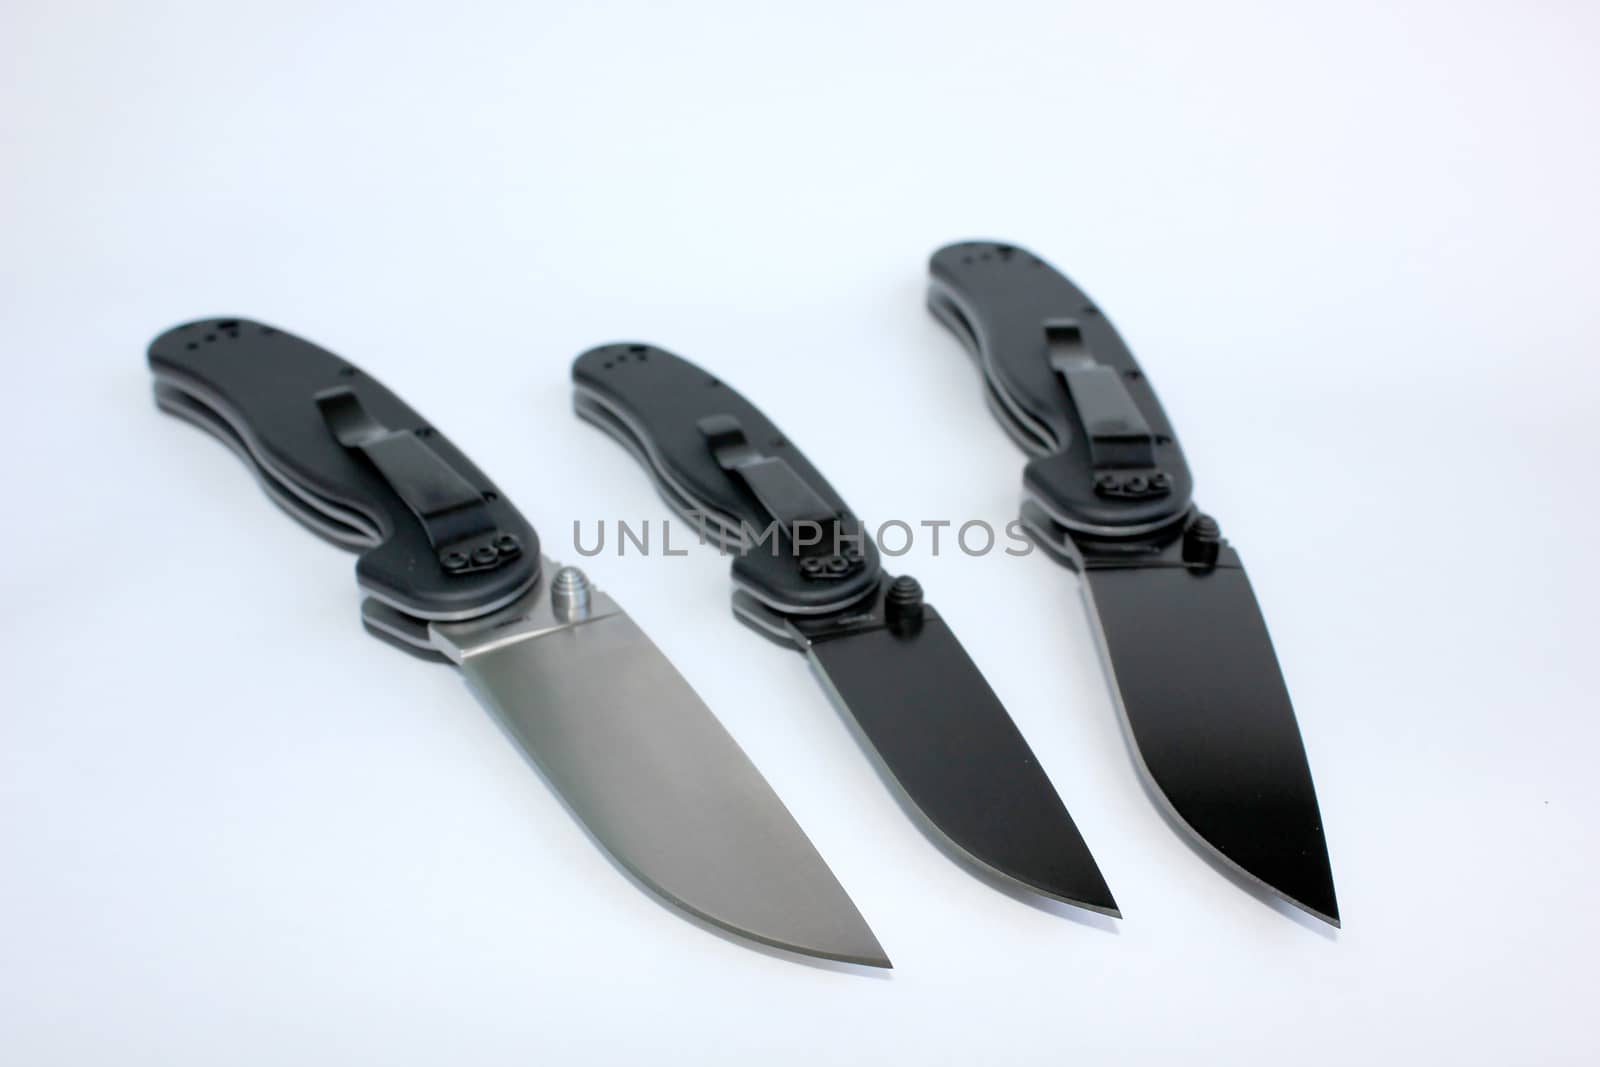  Three knives - three rats by Vadimdem